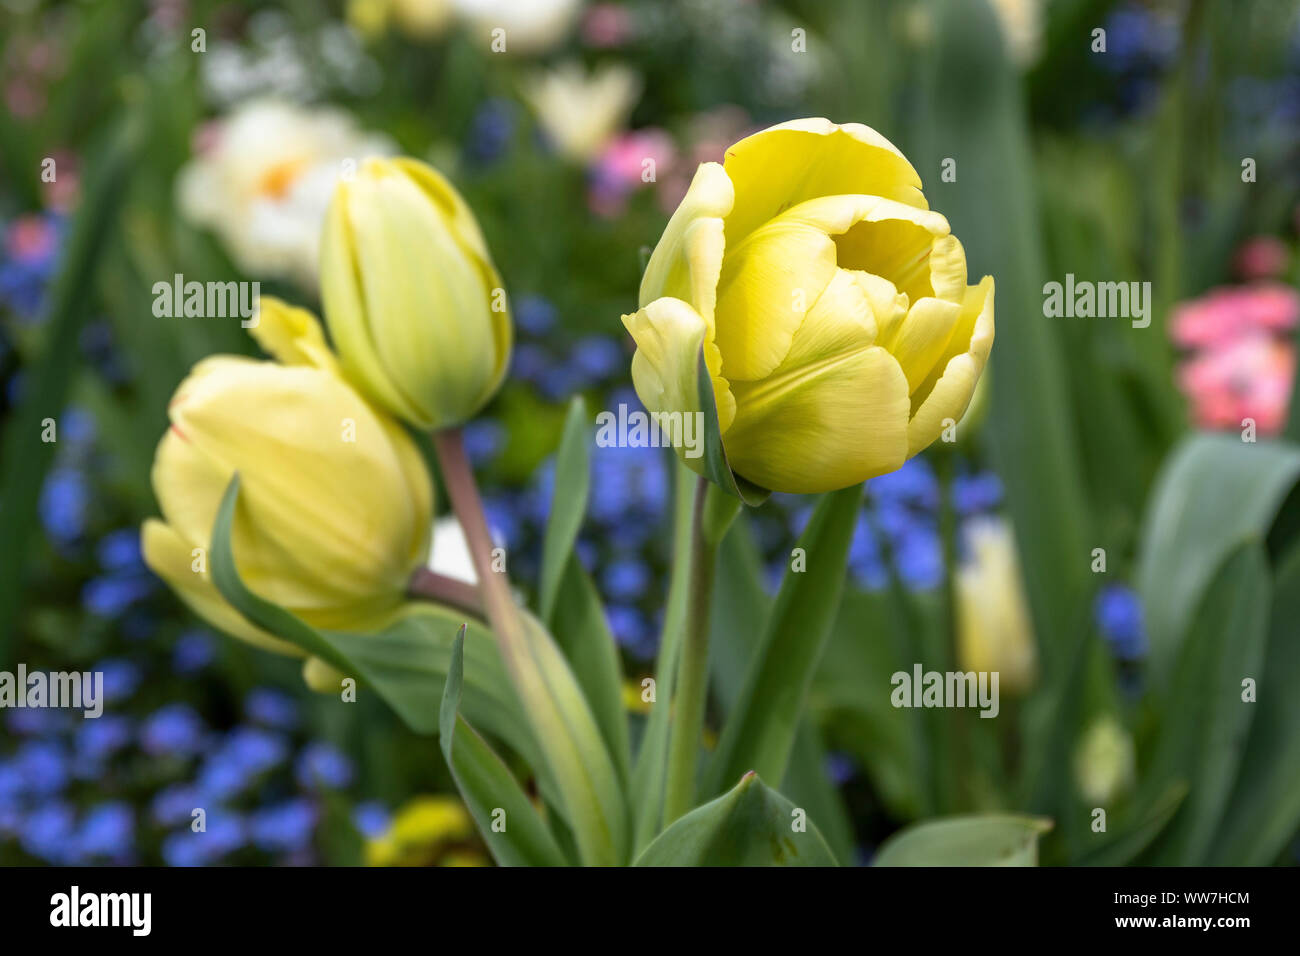 Deutschland, Baden-Württemberg, Bodensee, Bodensee, Insel Mainau, Gelbe Tulpen auf der Mainau Blumeninsel im Frühjahr Stockfoto